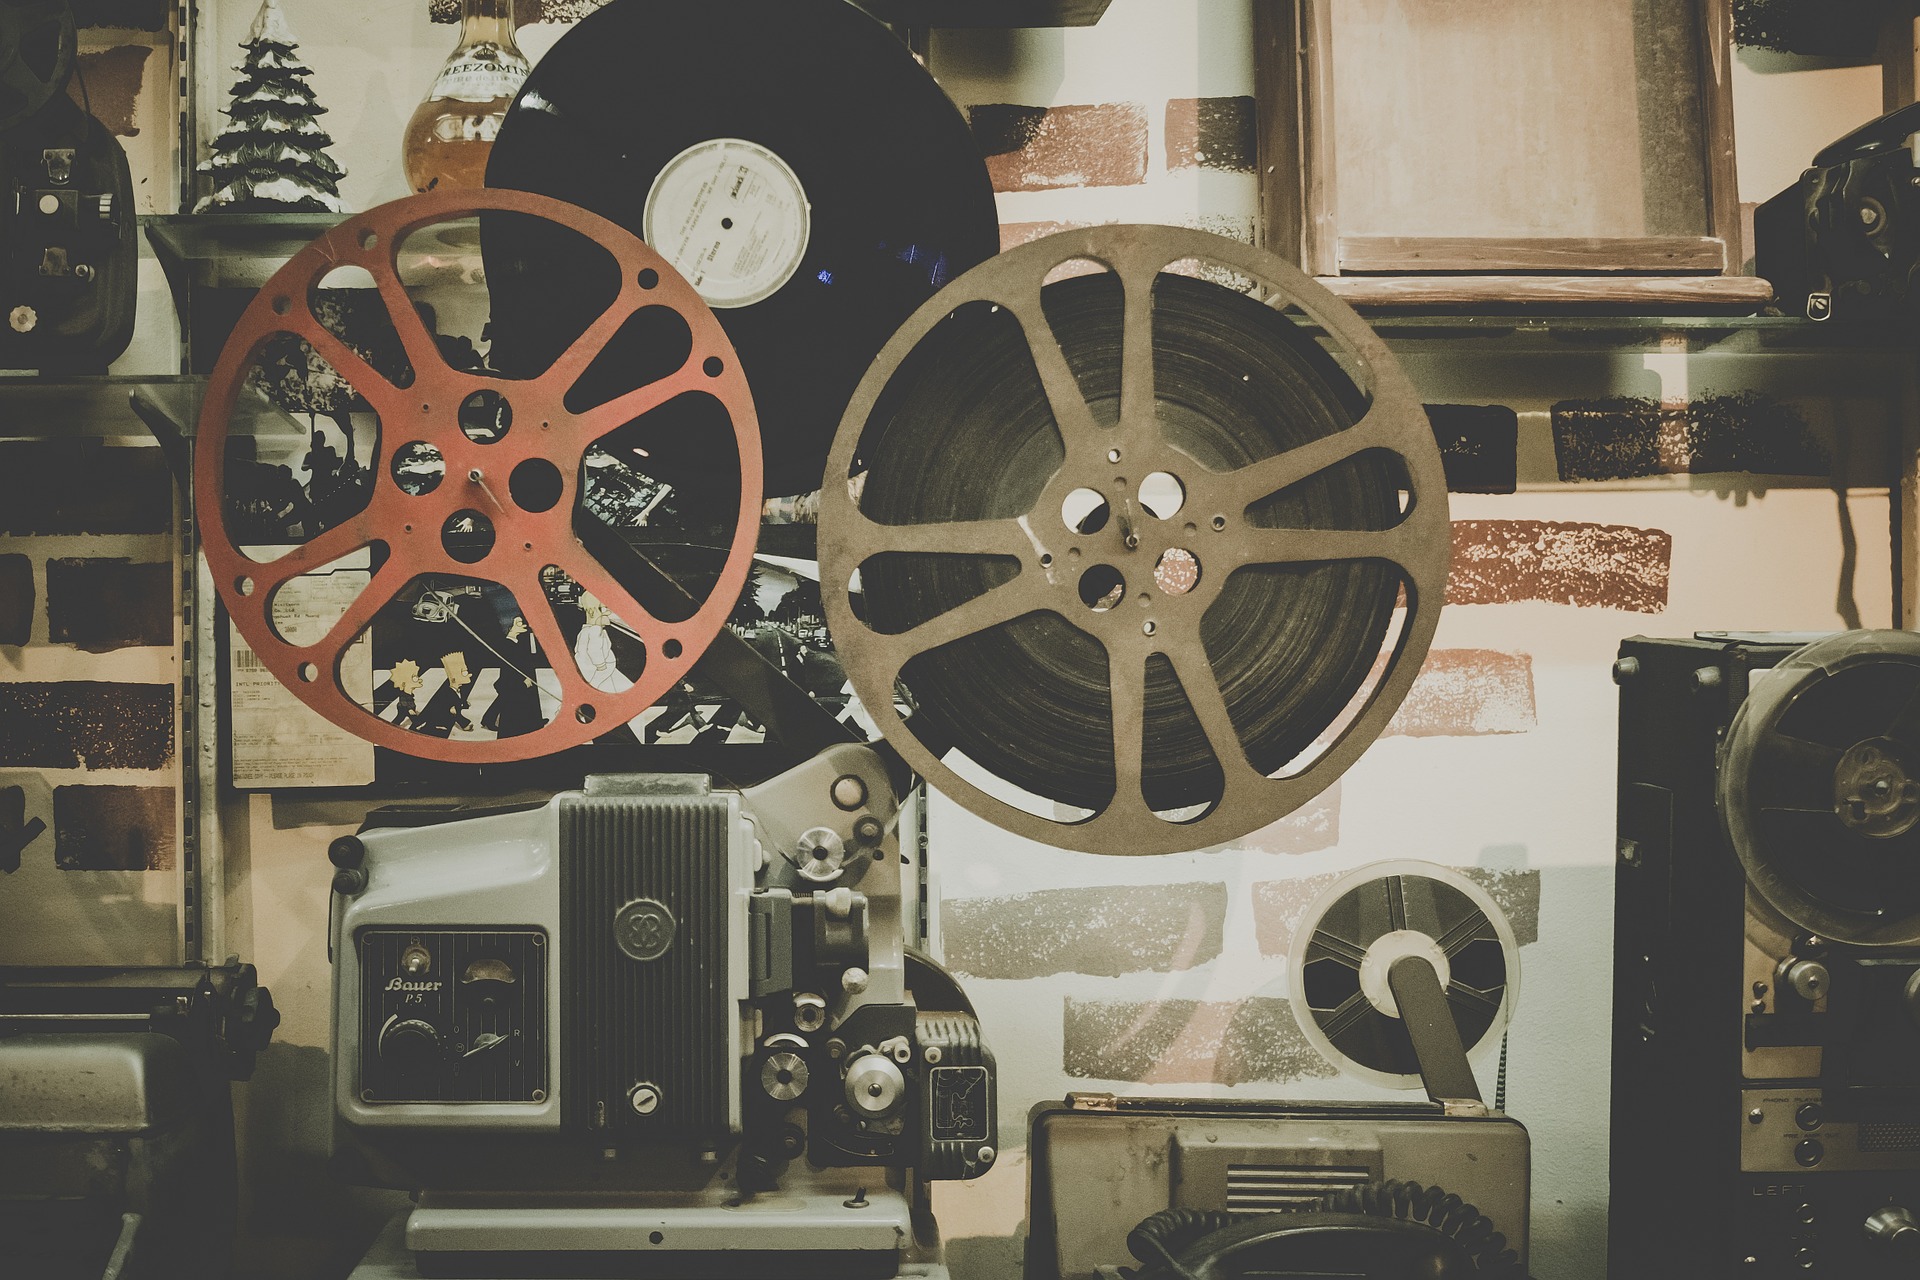 Кинопрокатный бизнес “Наше кино” переведен на новую структуру